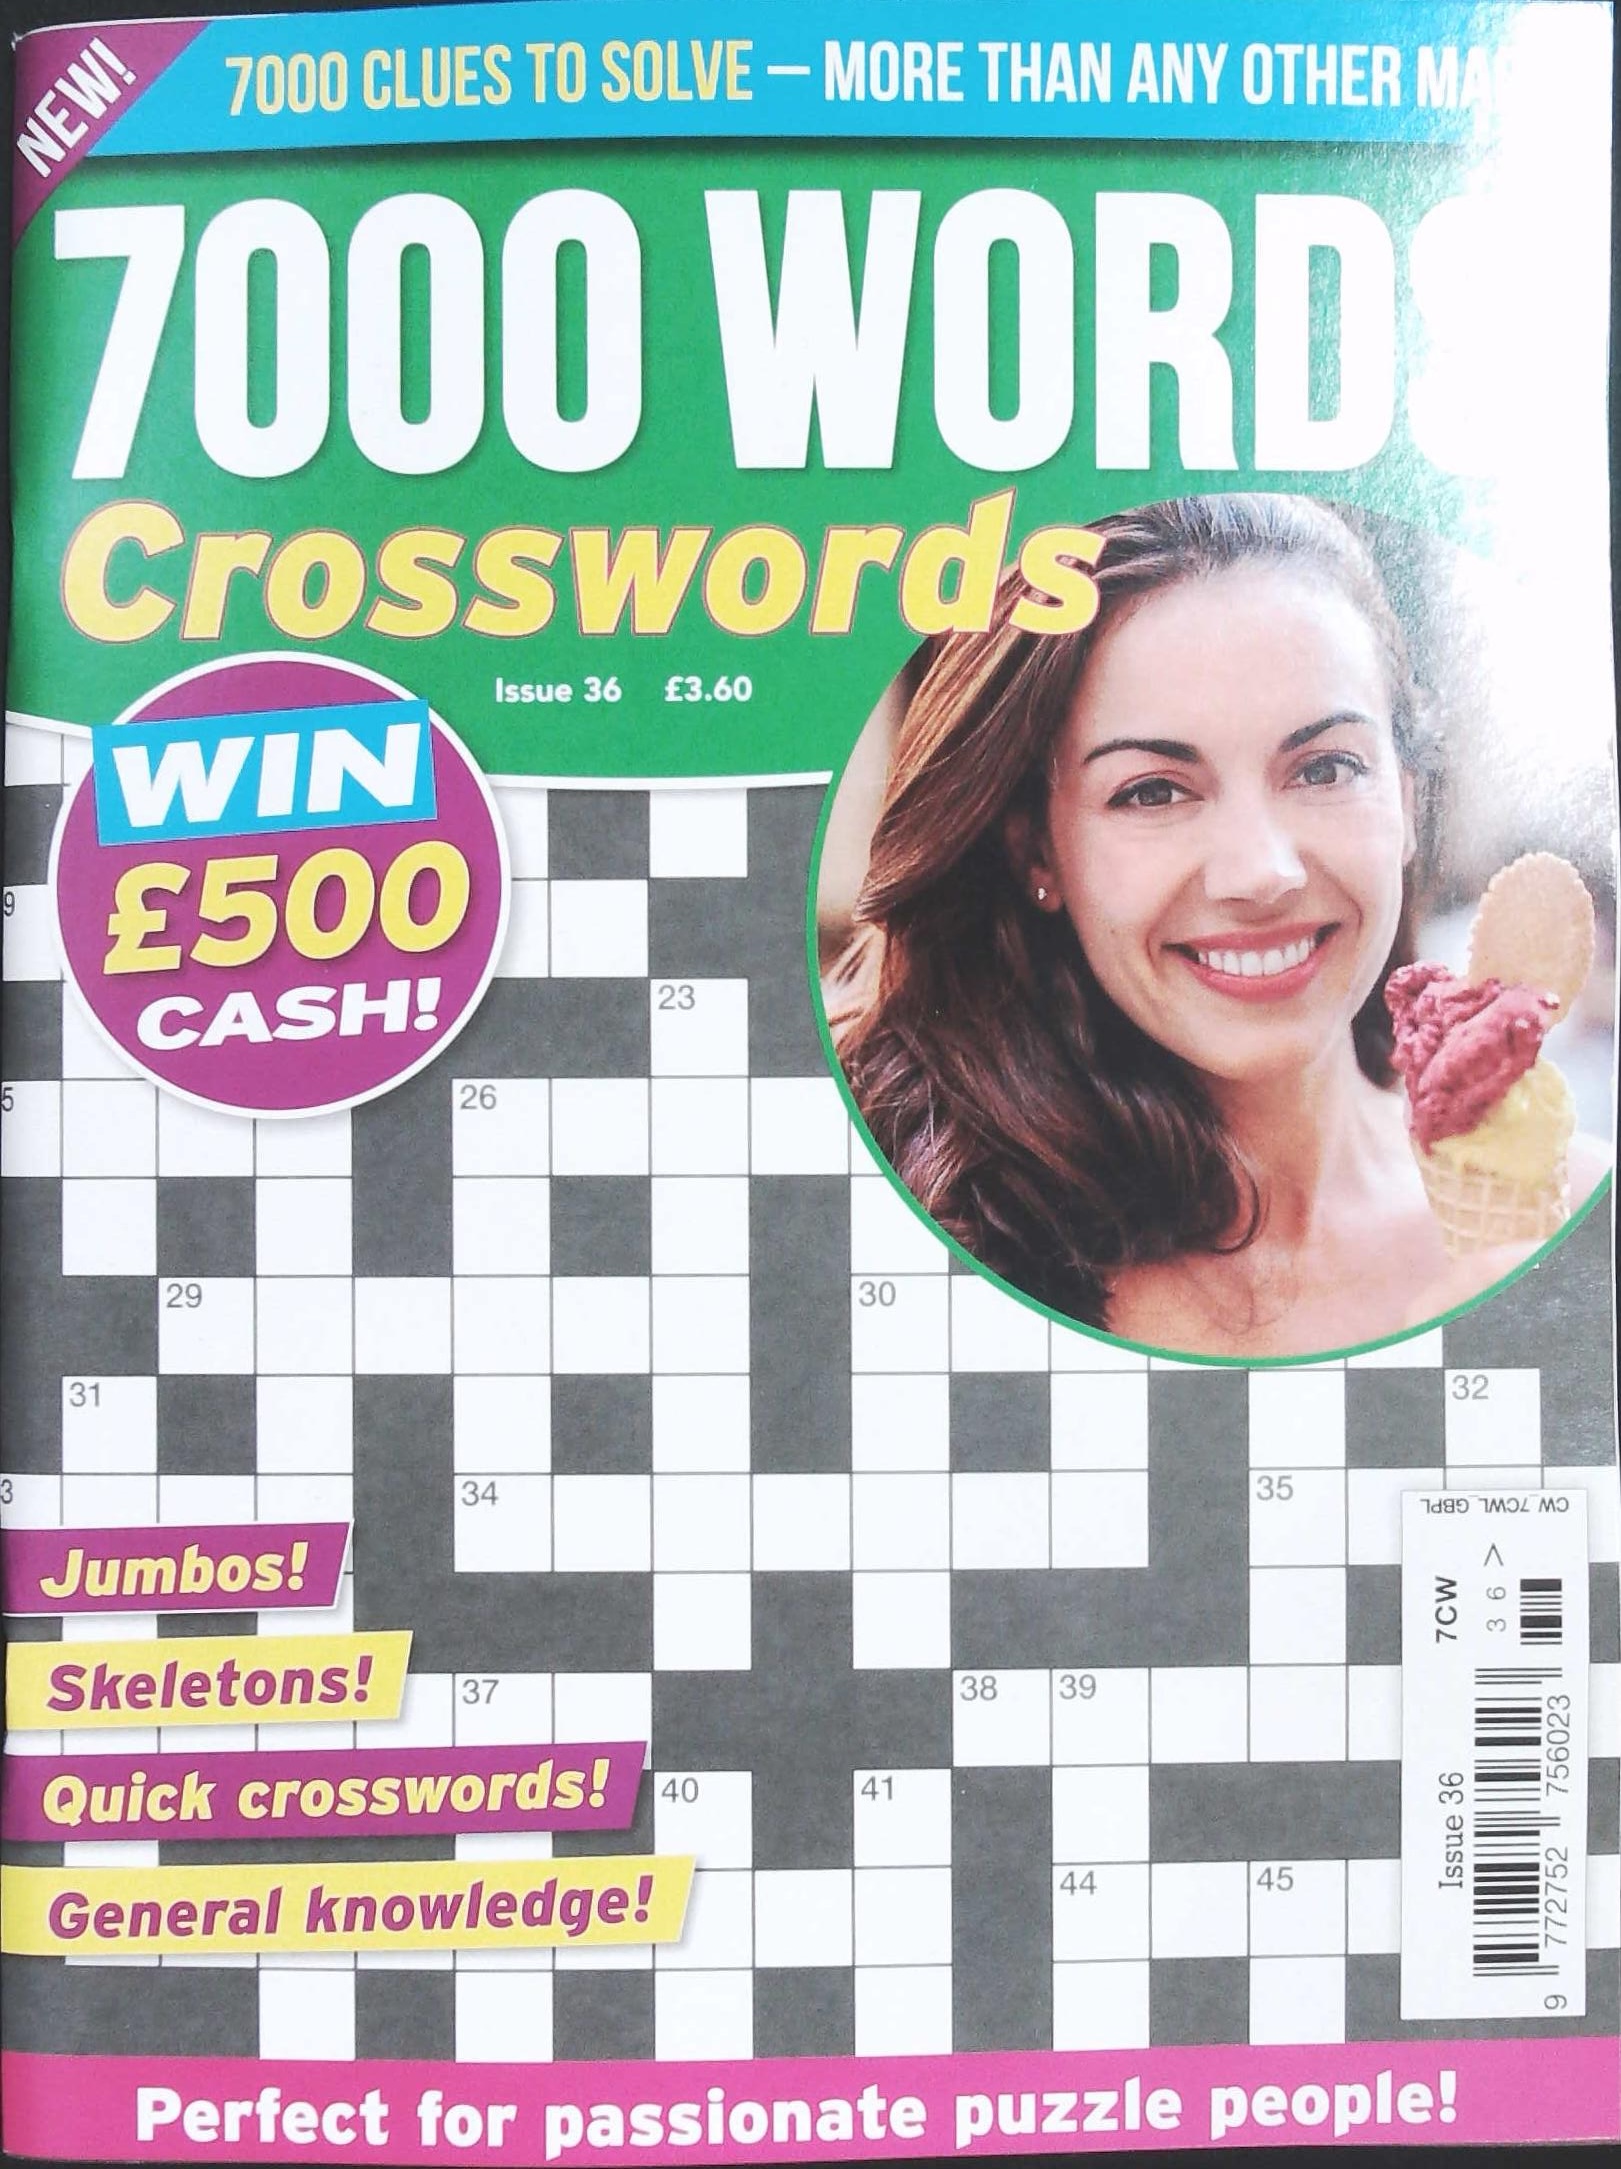 7000 WORD CROSSWORDS